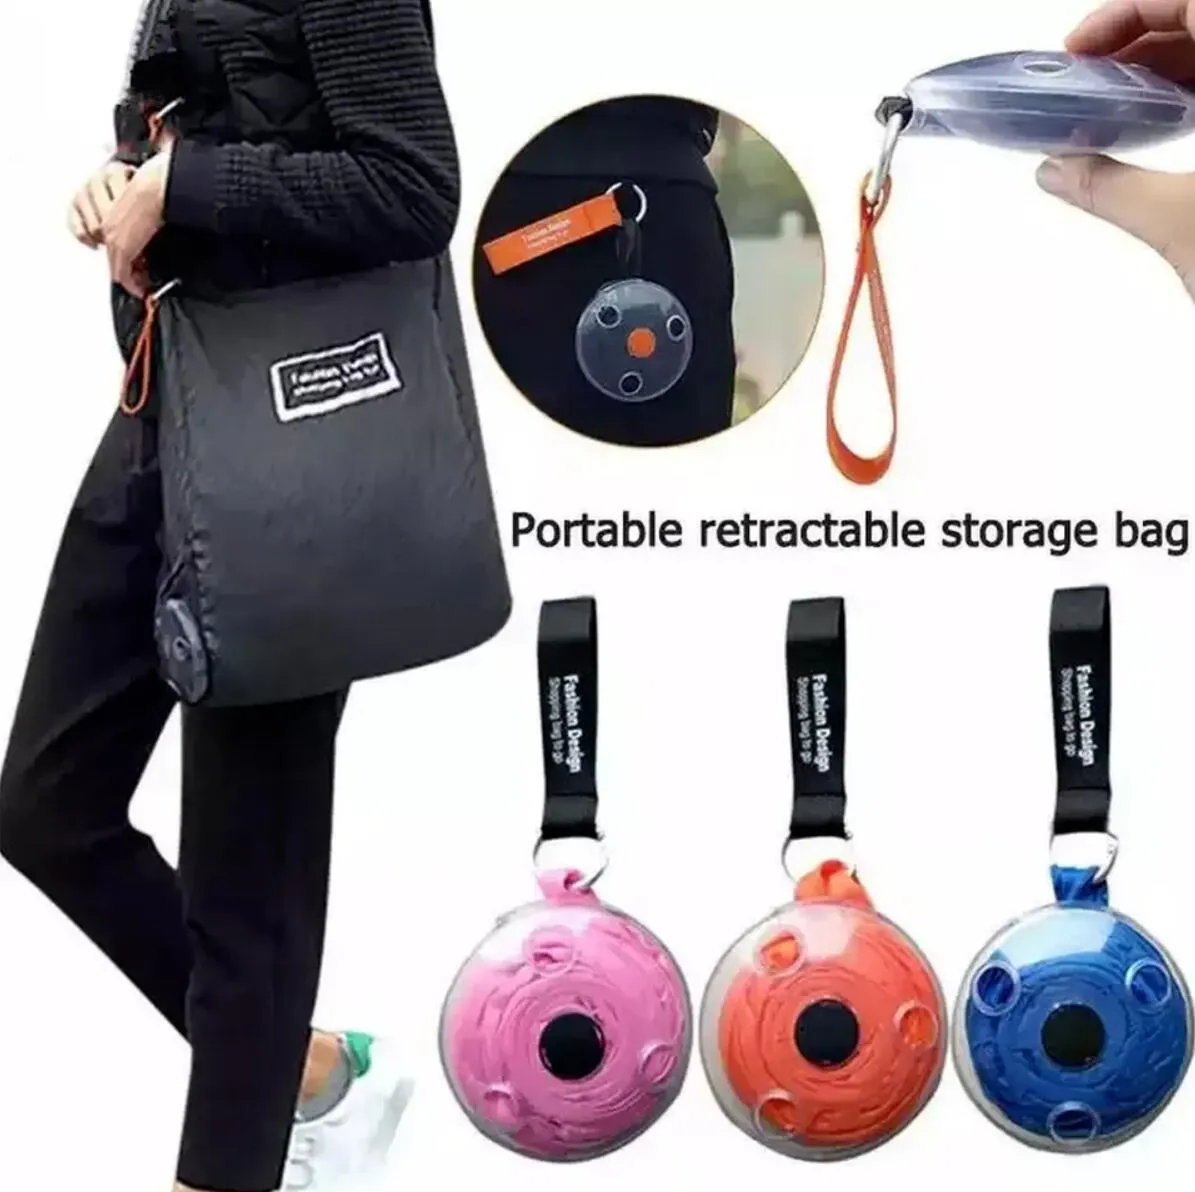 Taşınabilir katlanır teleskopik küçük disk alışveriş çantası çok fonksiyonlu depolama çantası yeniden kullanılabilir alışveriş çantası organizatör seyahat çantası C0812